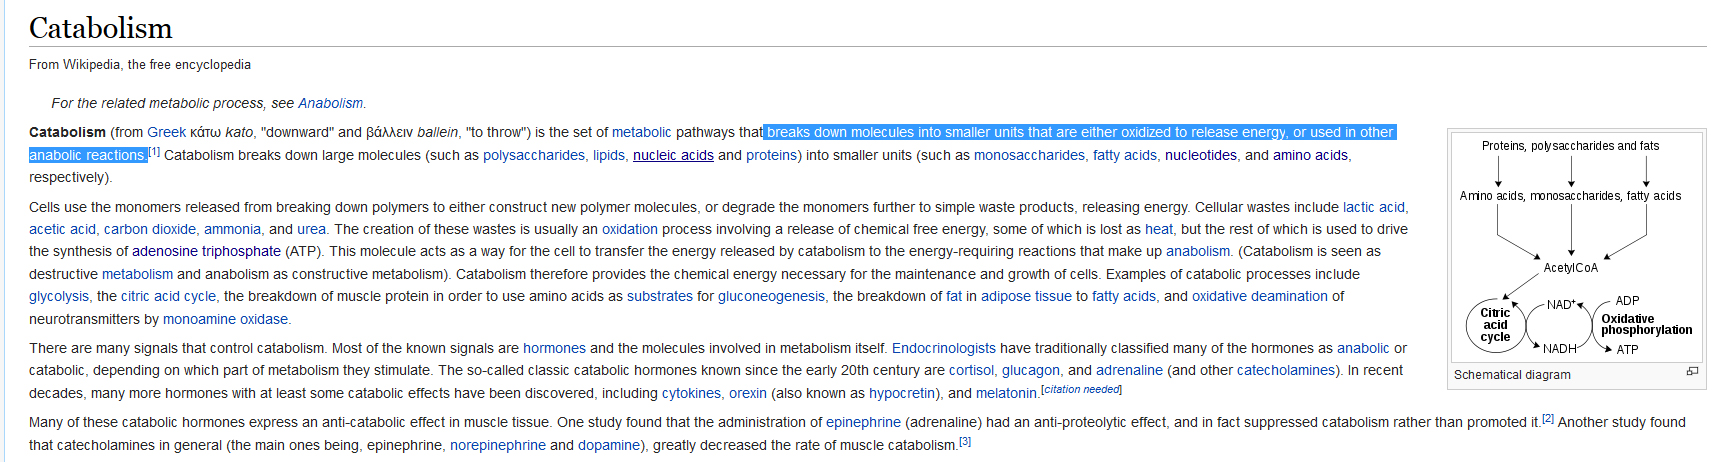 Catabolism definitie Wikipedia